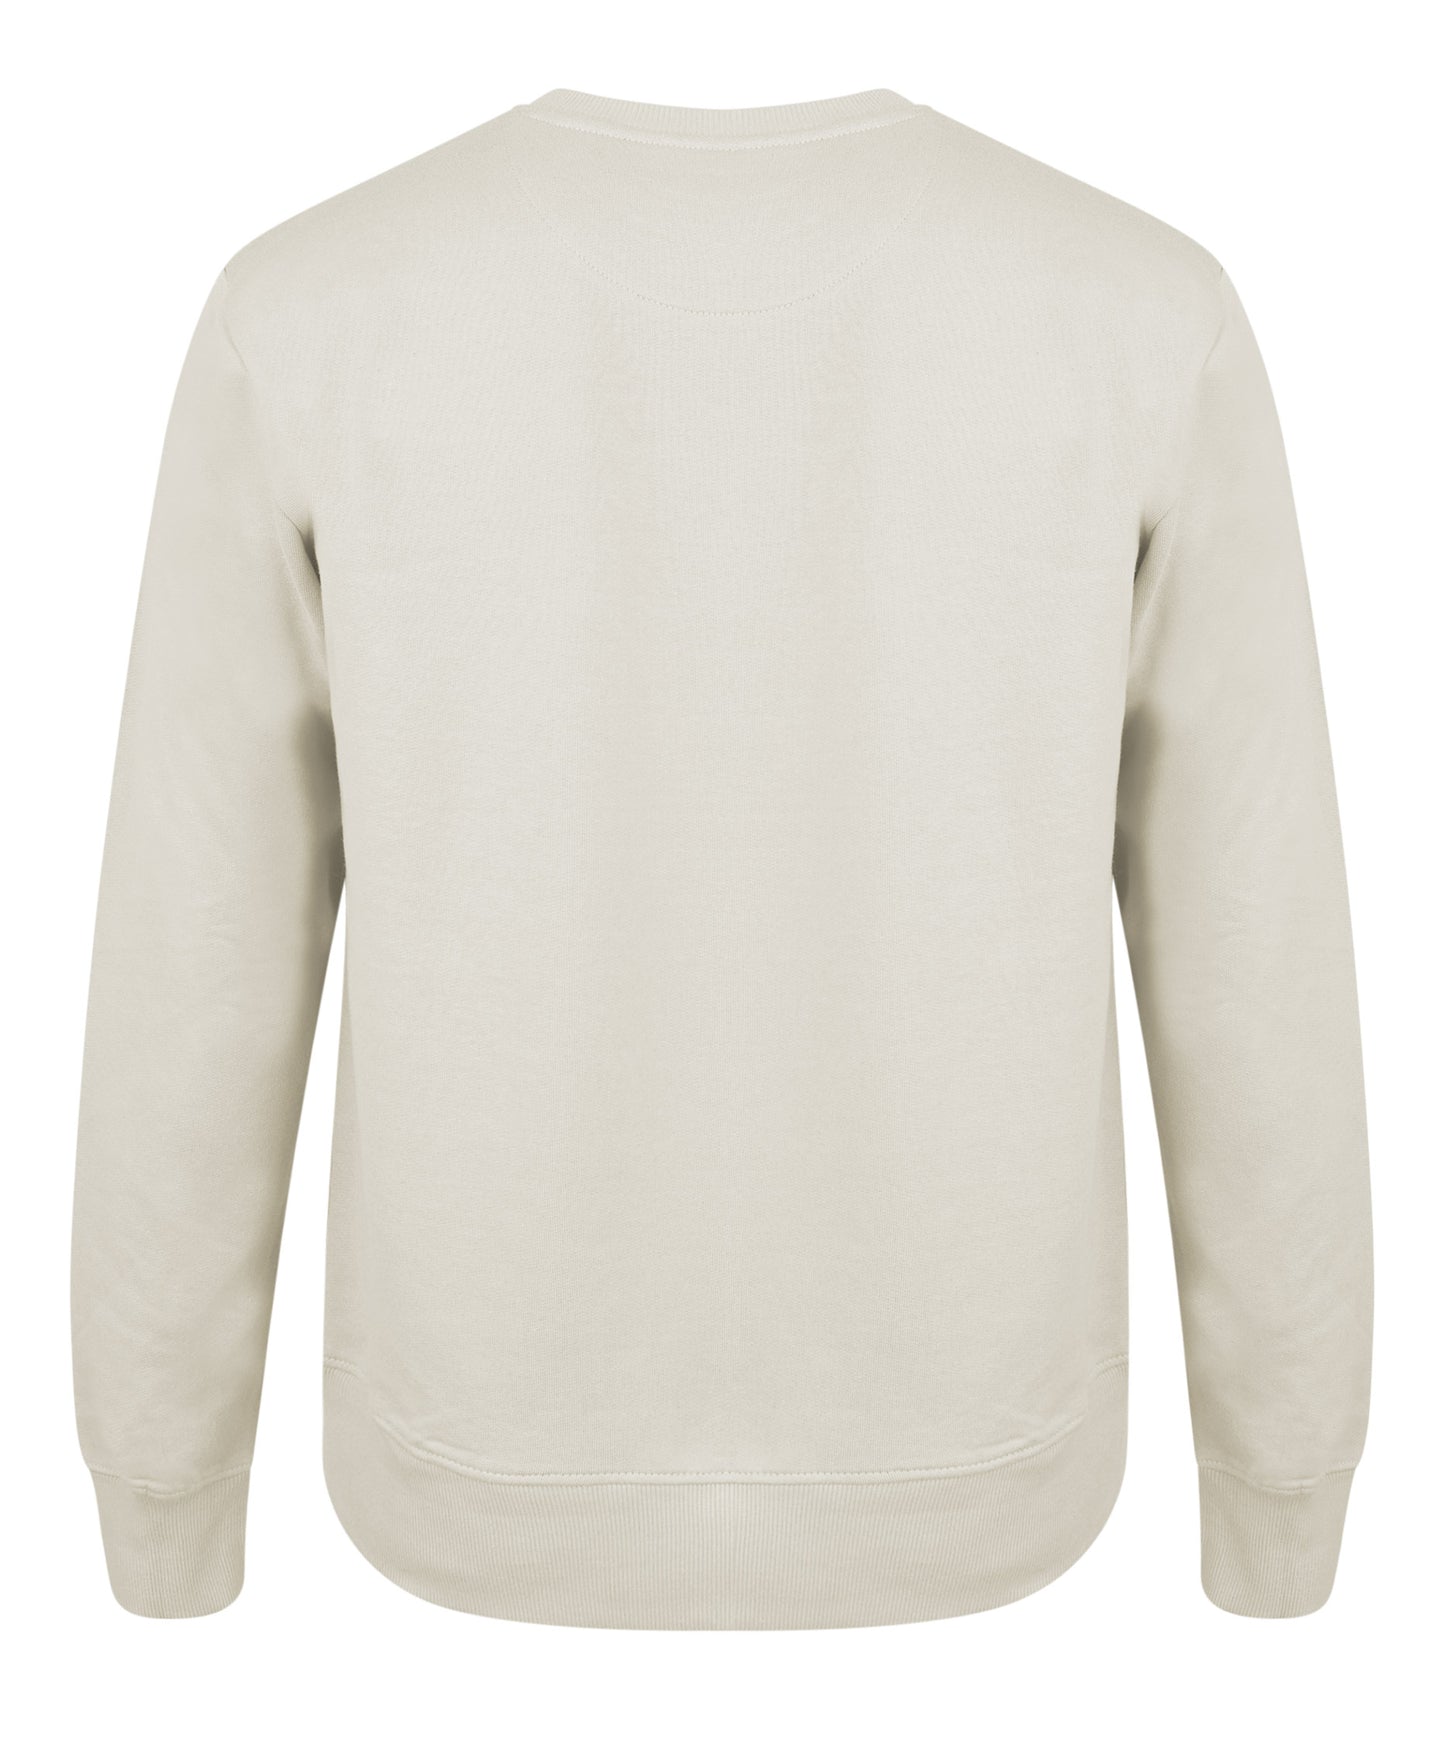 Athleez Sweatshirt - Basic